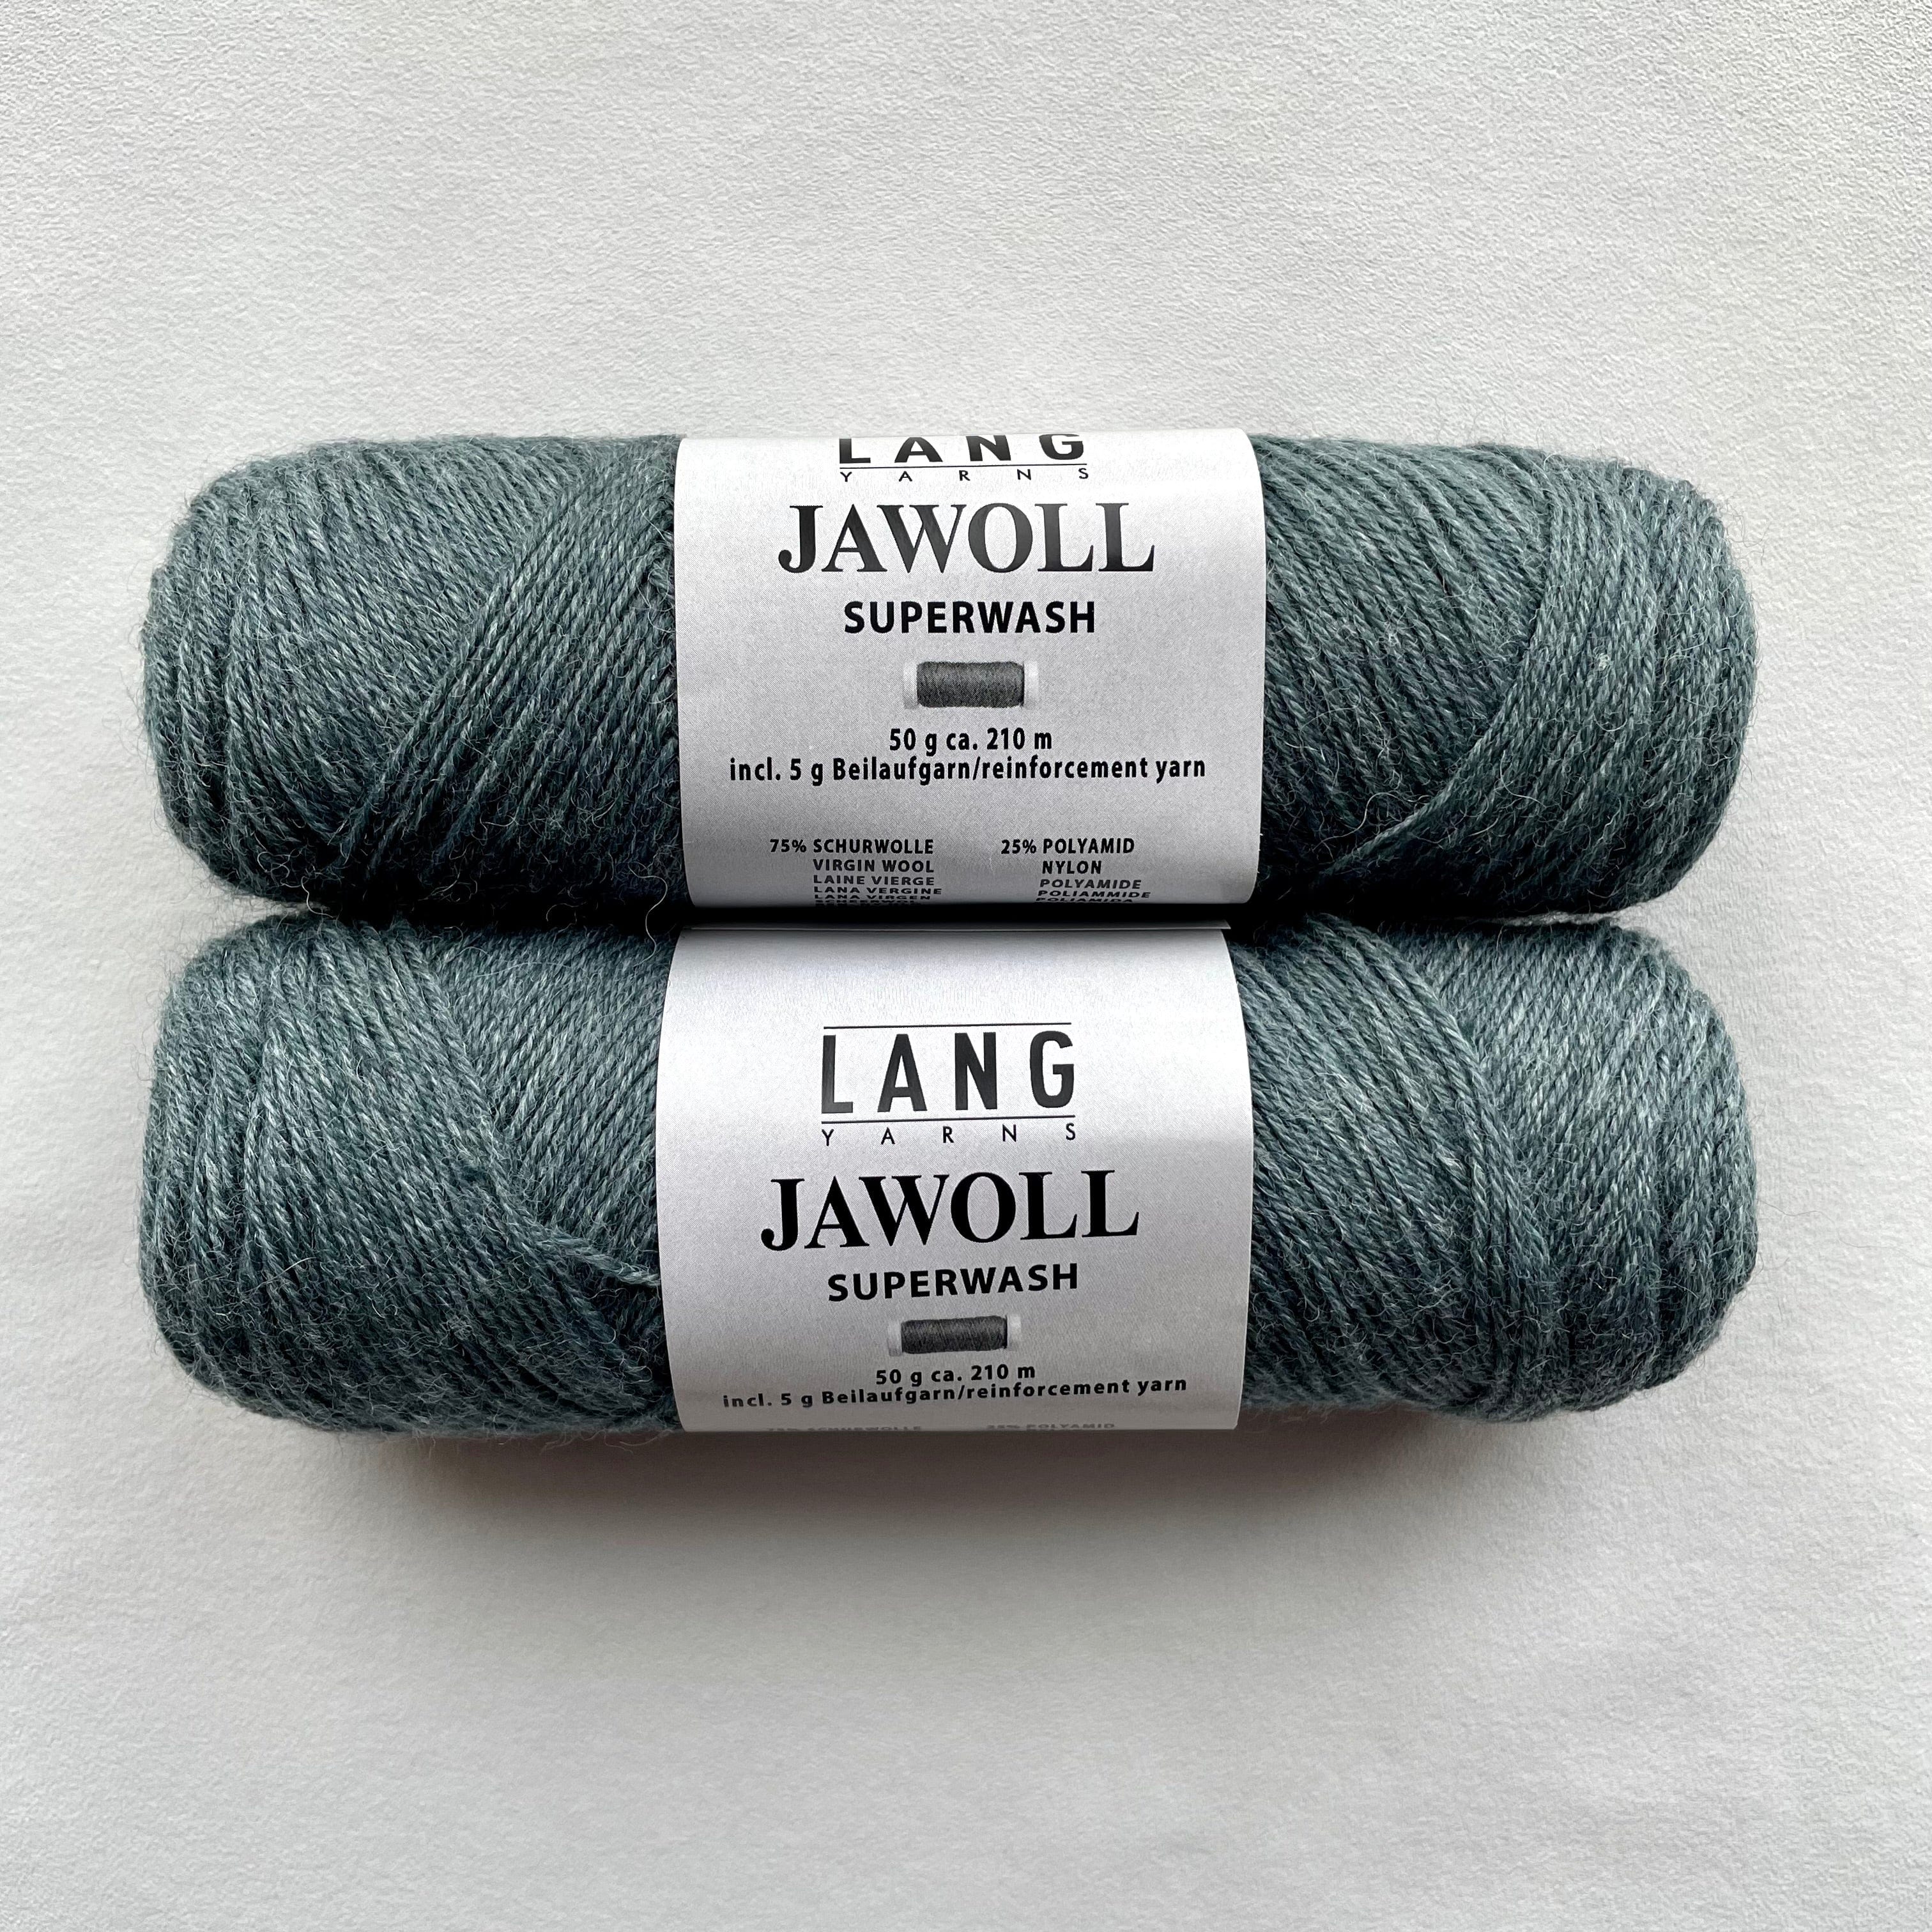 Jawoll by Lang Yarns